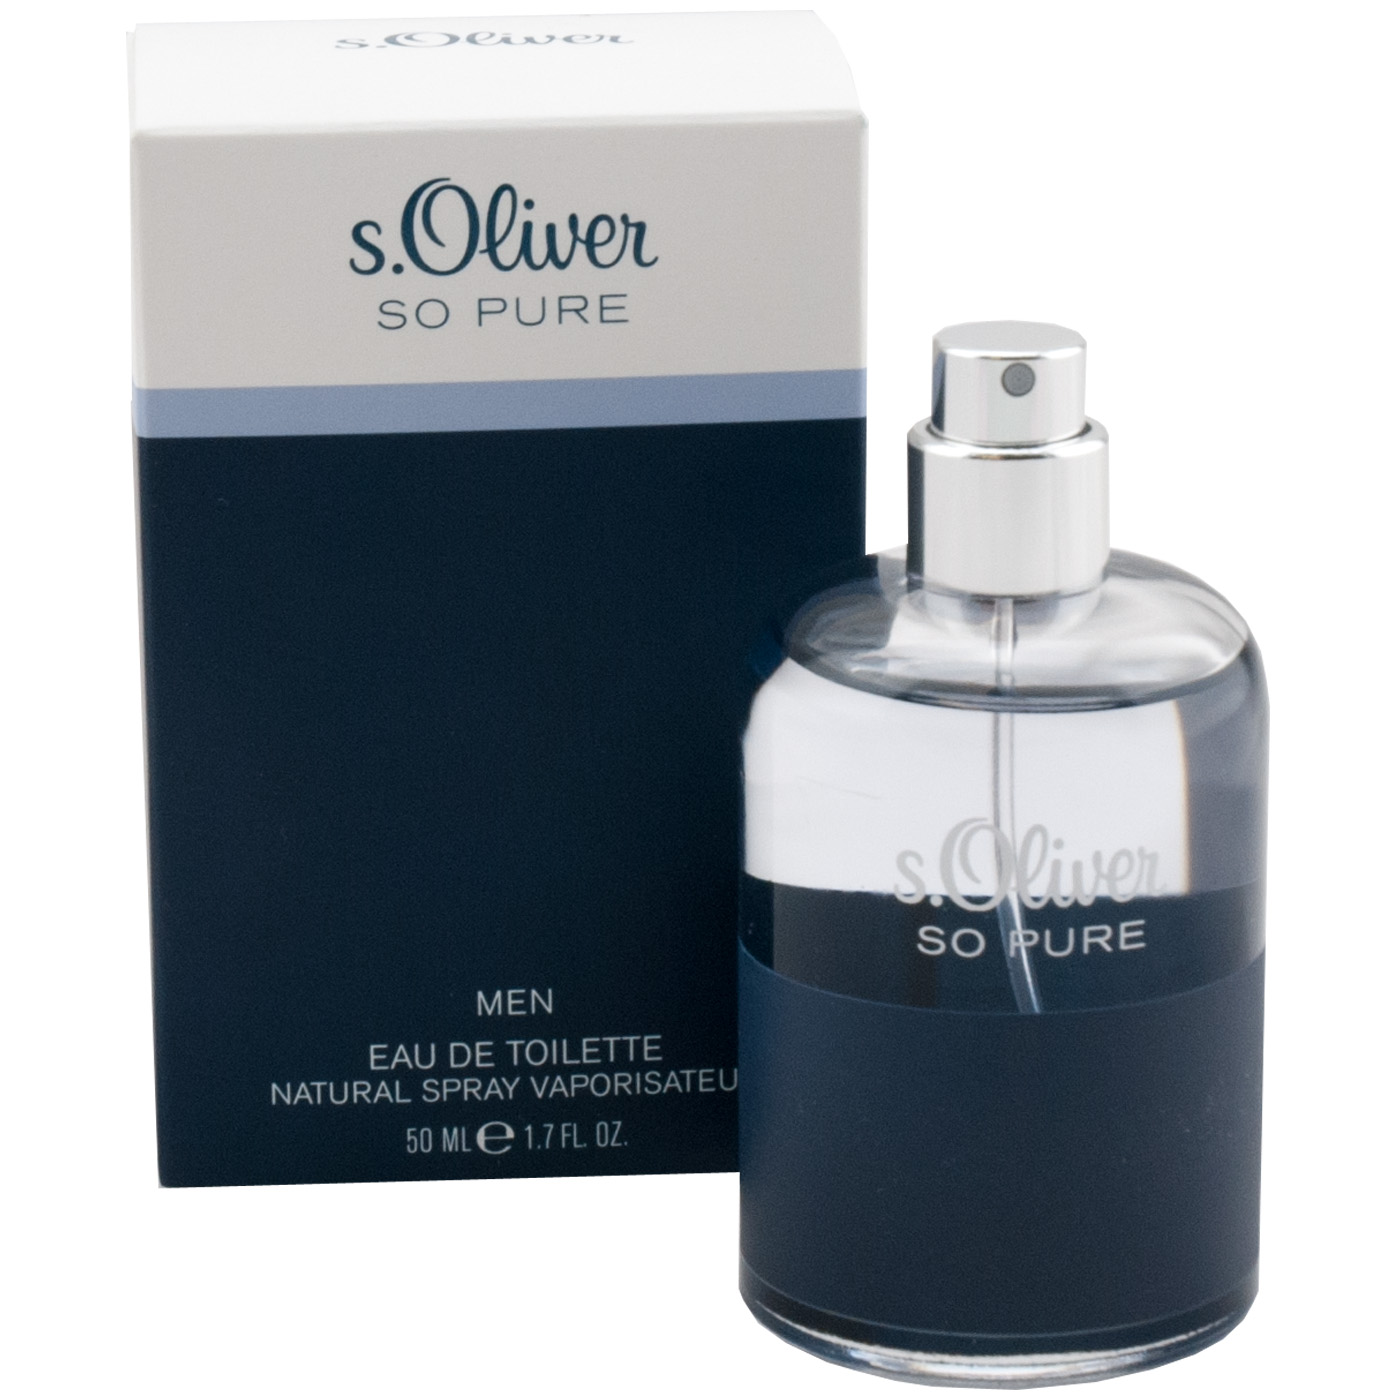 Regenachtig Schurend Normaal gesproken s oliver so pure parfum,www.autoconnective.in